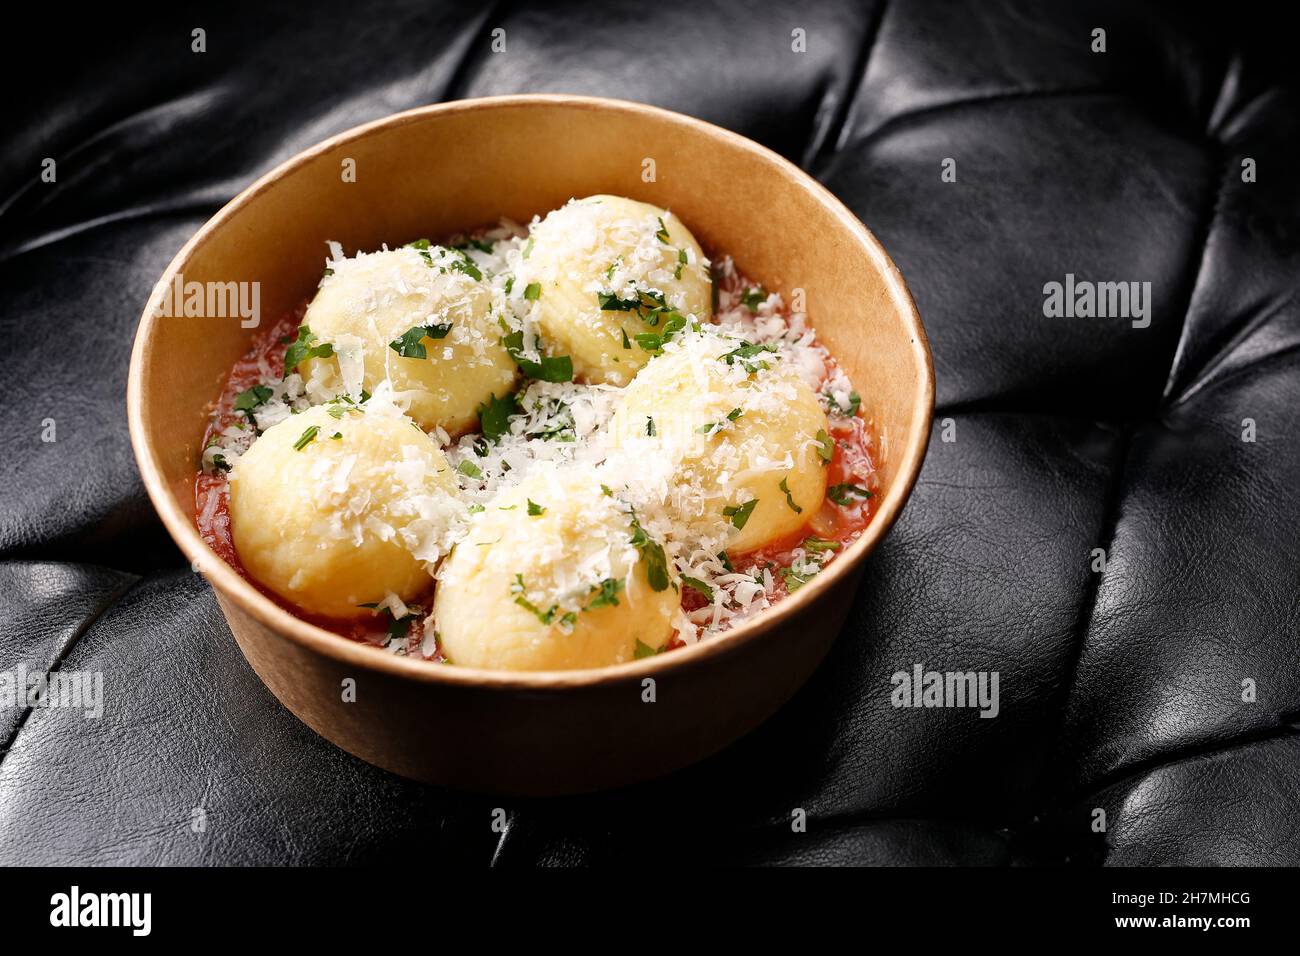 Gnocchi di patate, boulettes de pommes de terre sauce tomate et parmesan.À emporter, boîte de régime.Plat appétissant prêt-à-emporter servi dans un bo jetable Banque D'Images